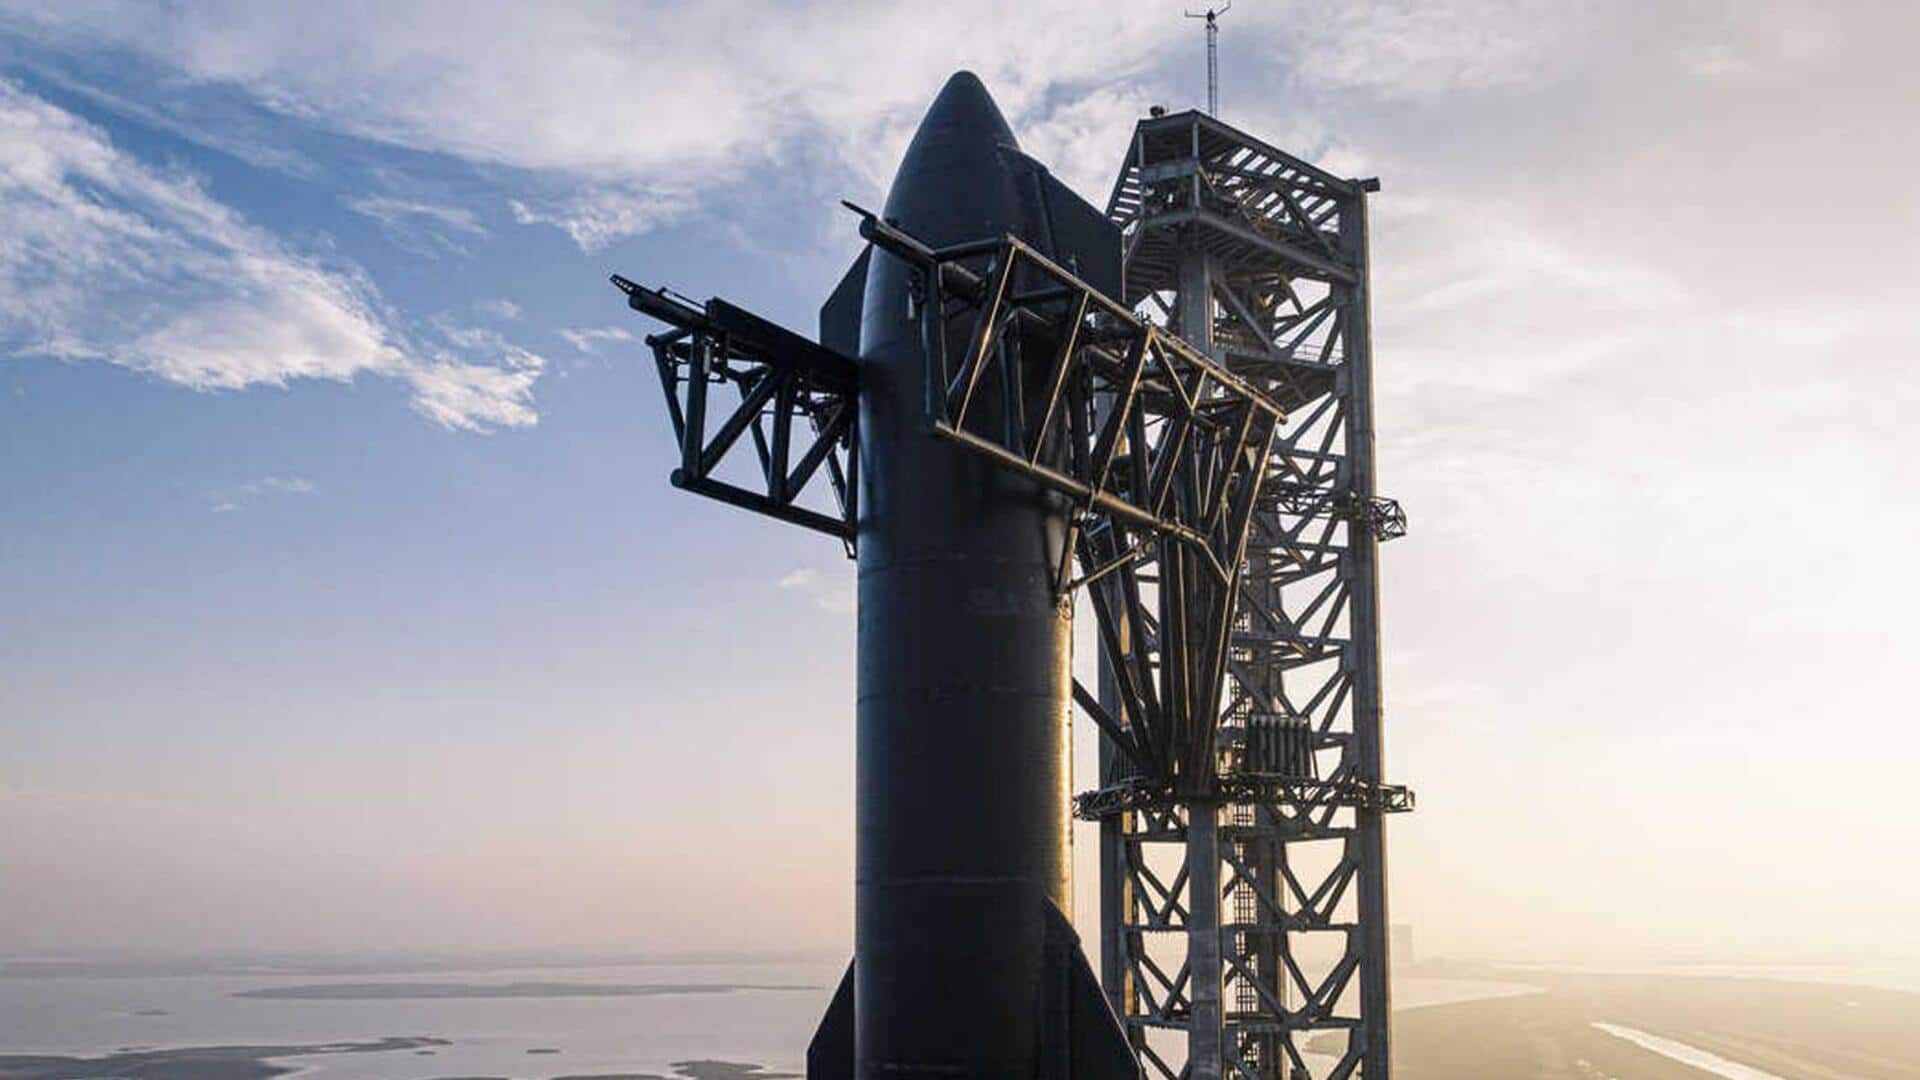 स्पेस-X ने स्टारशिप की तीसरी उड़ान से पहले किया अग्नि परीक्षण, जानें रॉकेट की खासियत